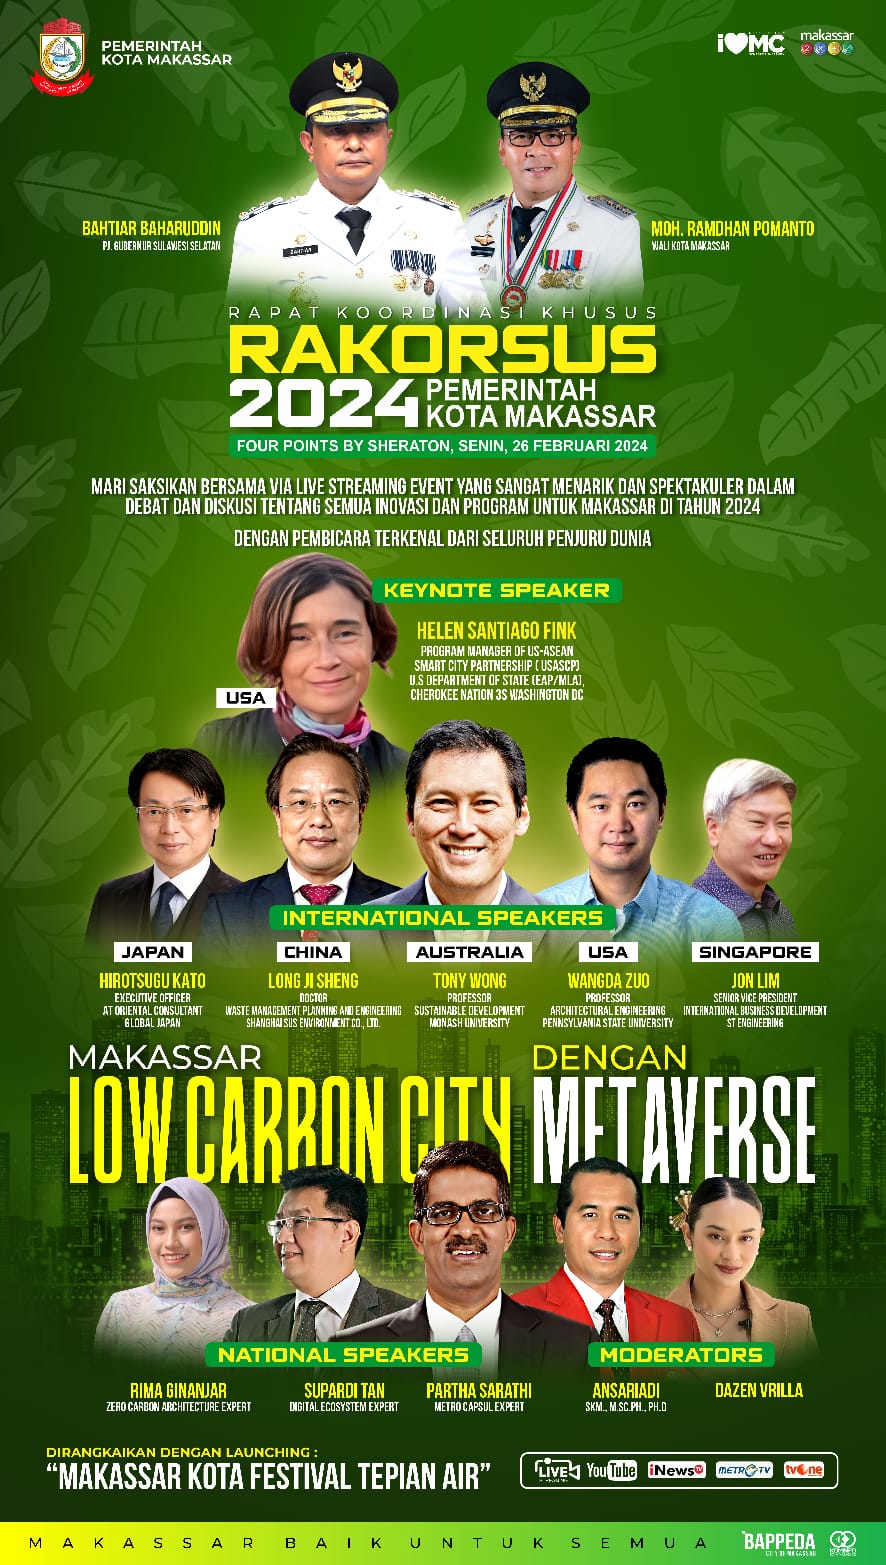 Rakorsus Pemkot Makassar Hadirkan Enam Pembicara dari Lima Negara, Bahas Soal Low Carbon City